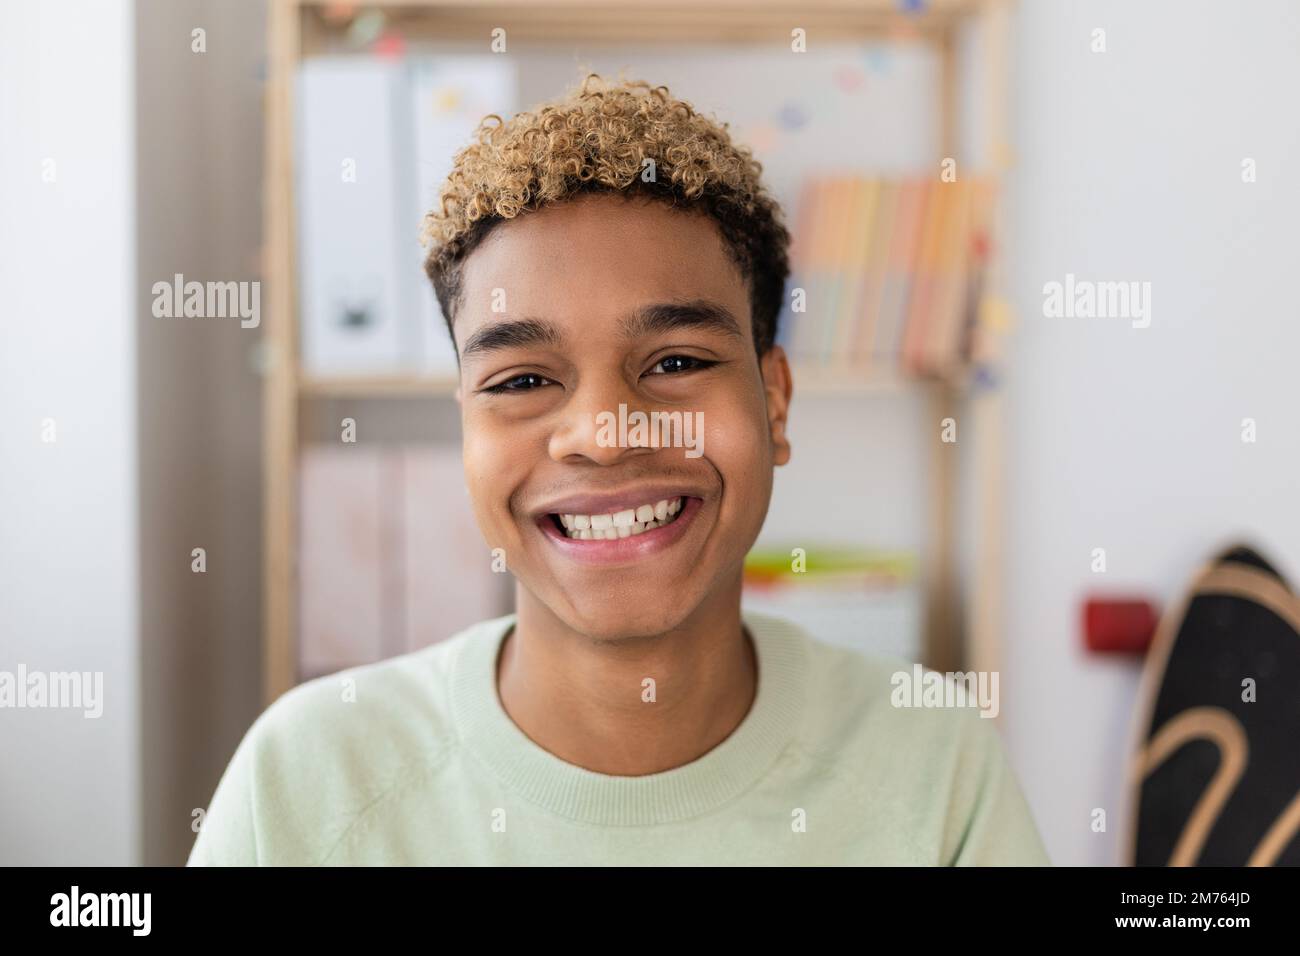 Jeune adolescent latino-américain souriant regardant l'appareil photo à l'intérieur Banque D'Images